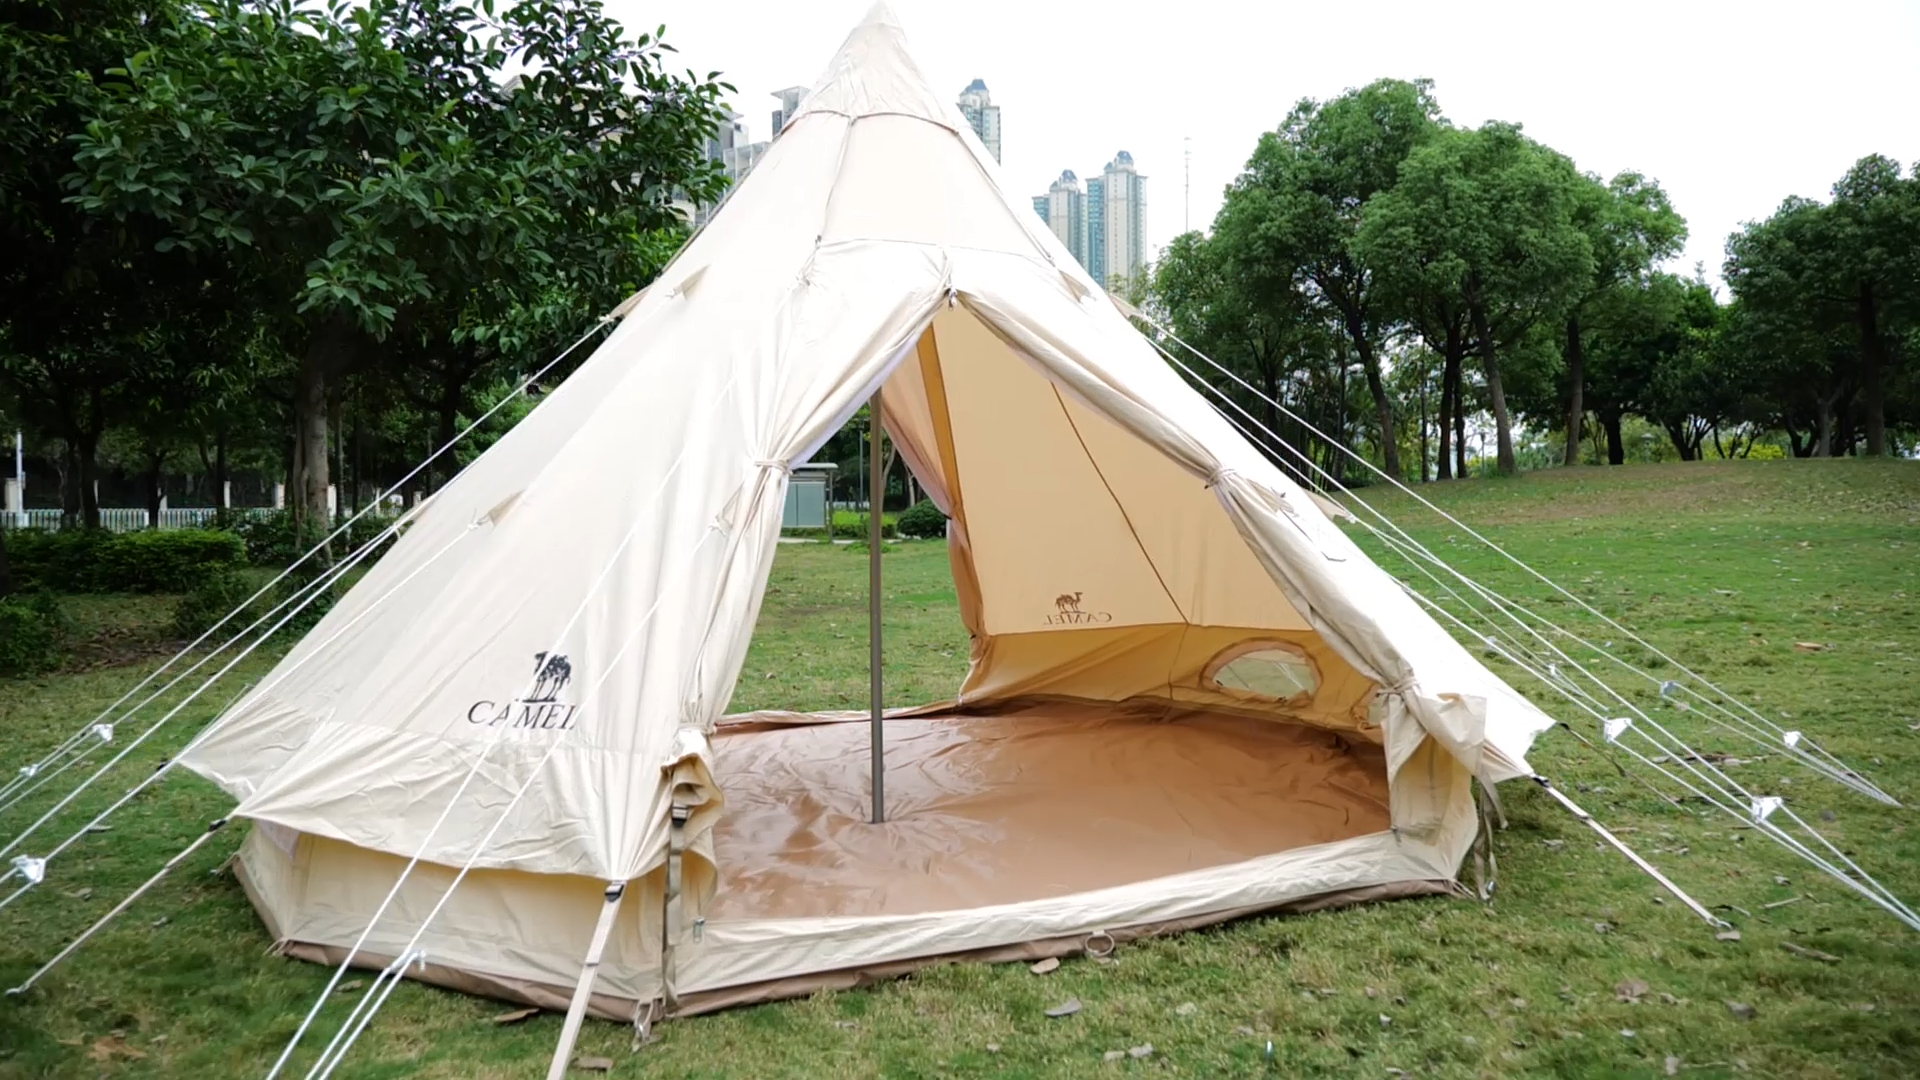 Tent de chameau 2-4 personne Ventilation 4 Saison Large Picnic Coton Canvas Tipi Tent Outdoor Camping Pyramid Tent1